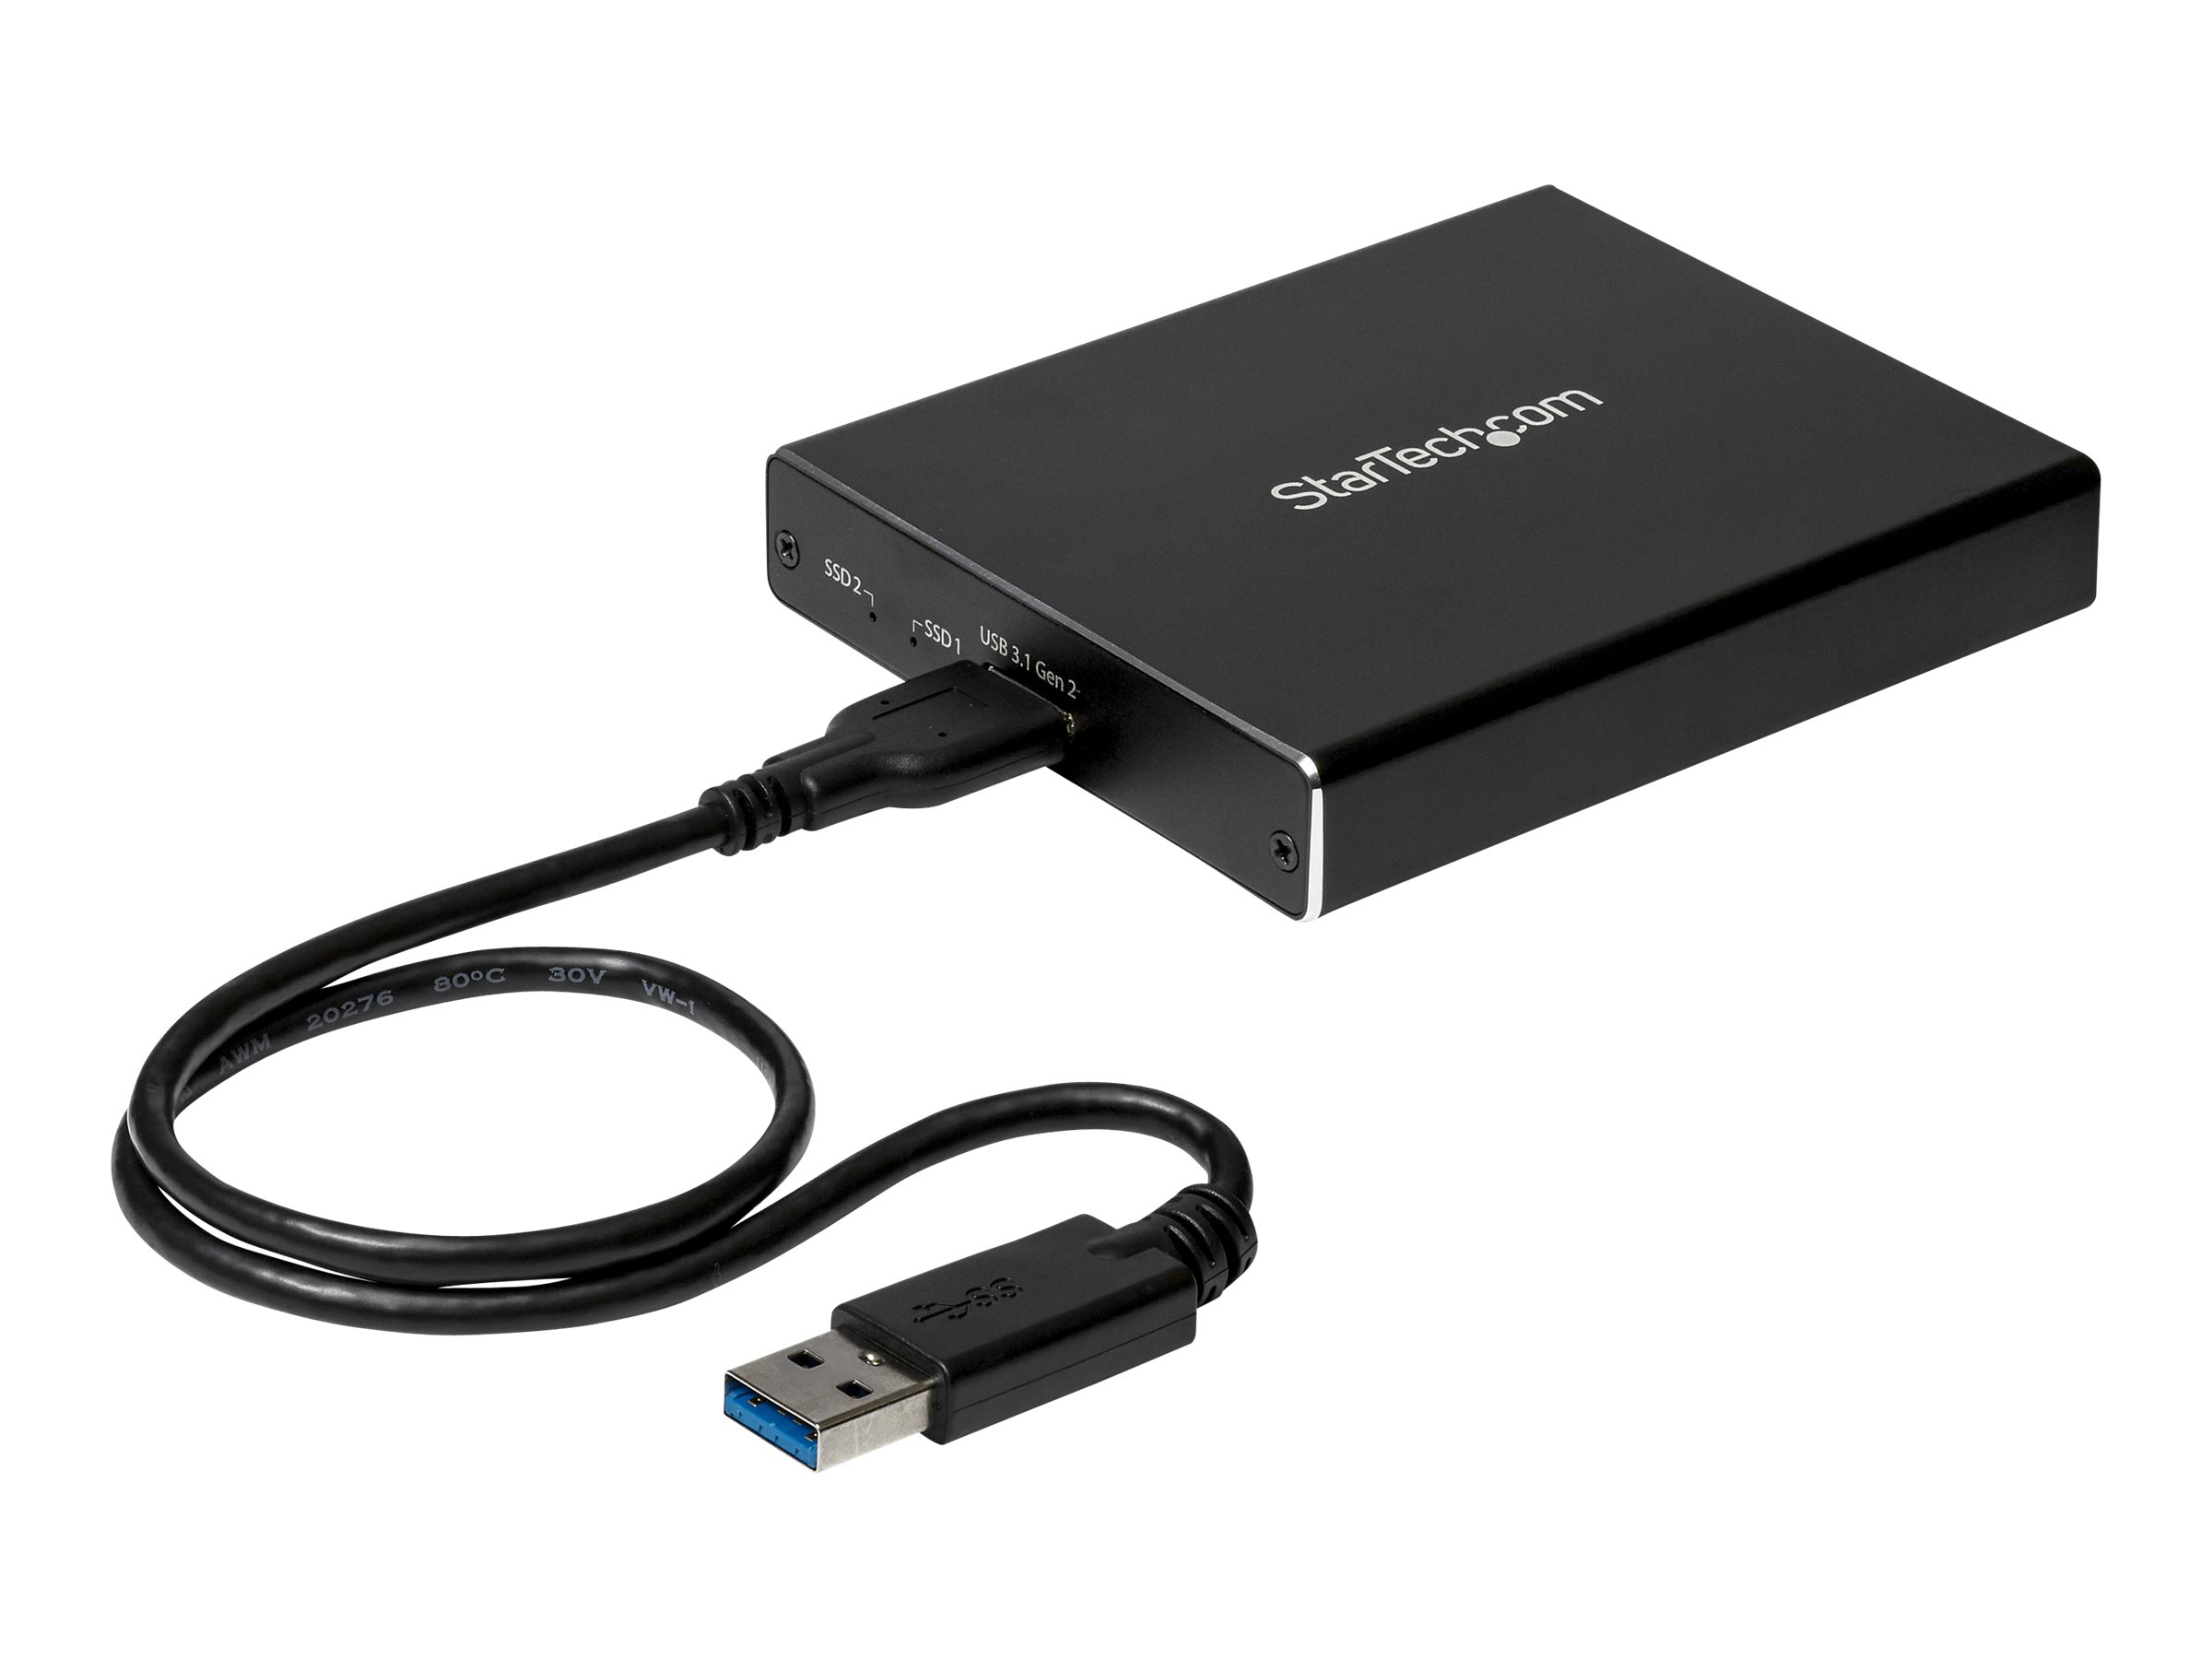 StarTech.com SSD Festplattengehäuse für zwei M.2 Festplatten - USB 3.1 Type C - USB C Kabel - USB 3.1 Case zu 2x M2 Adapter - Flash-Speicher-Array - 2 Schächte